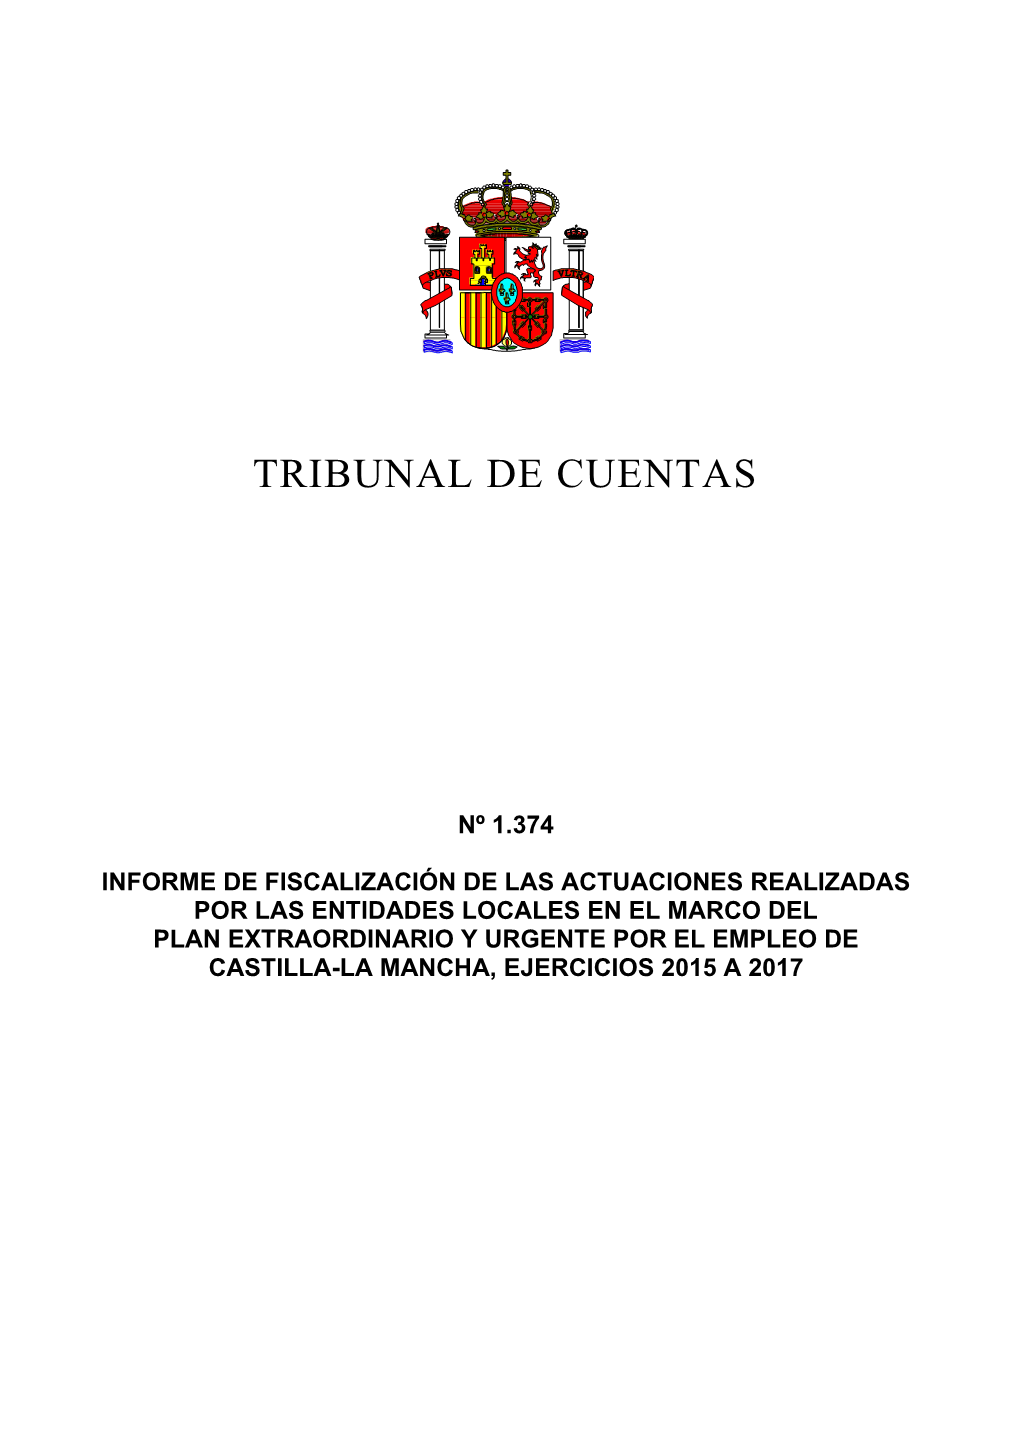 Actuaciones Entidades Locales En El Marco Del Plan Empleo Castilla-La Mancha, 2015 a 2017 9